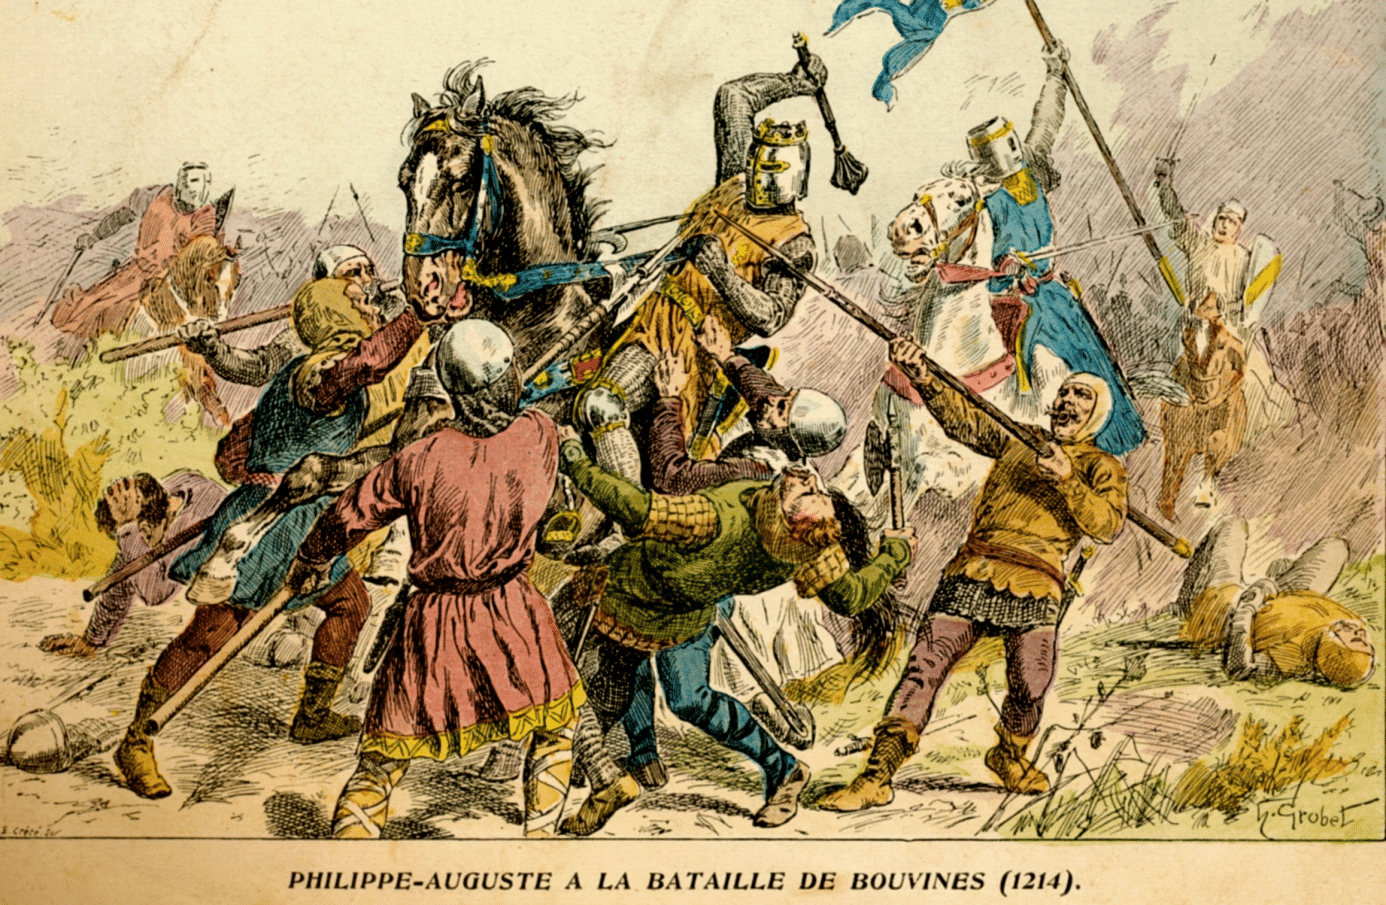 « Philippe Auguste à la bataille de Bouvines (1214) », illustration de Henri Grobet, 1902. (C) Wikipedia